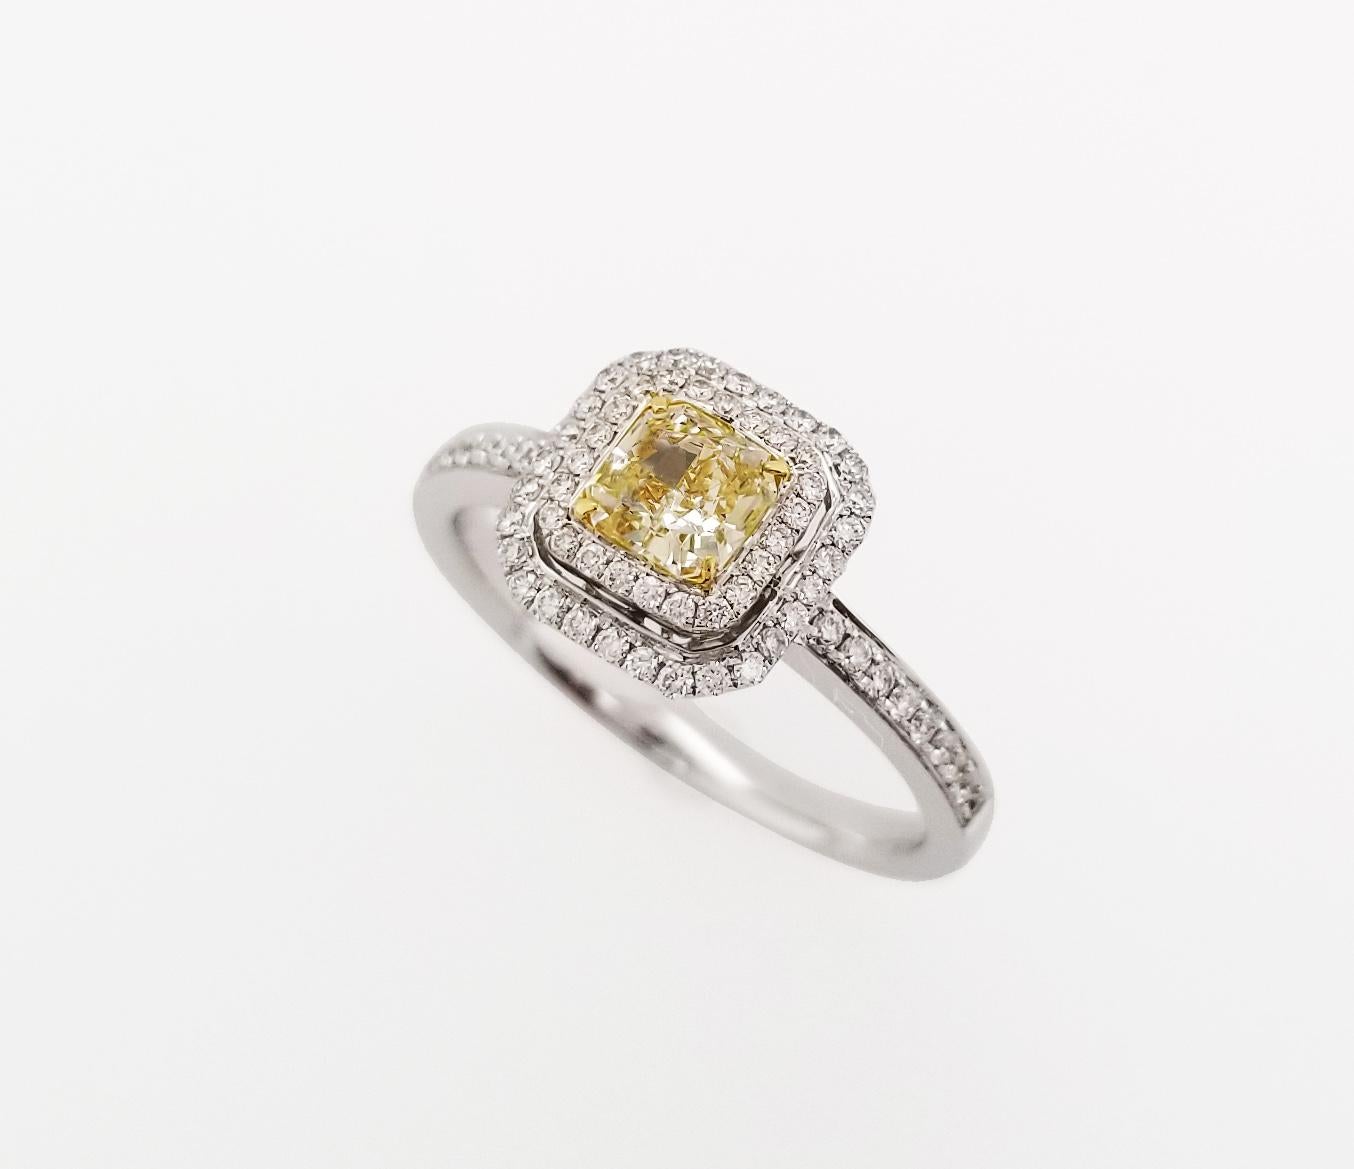 Guide des cadeaux pour la fête des mères !

Halo en diamant naturel jaune clair de 0,52 carat de taille coussin sur un anneau en or blanc 18 carats, orné de deux rangées de diamants blancs ronds et brillants. Tous les diamants sont certifiés GIA et